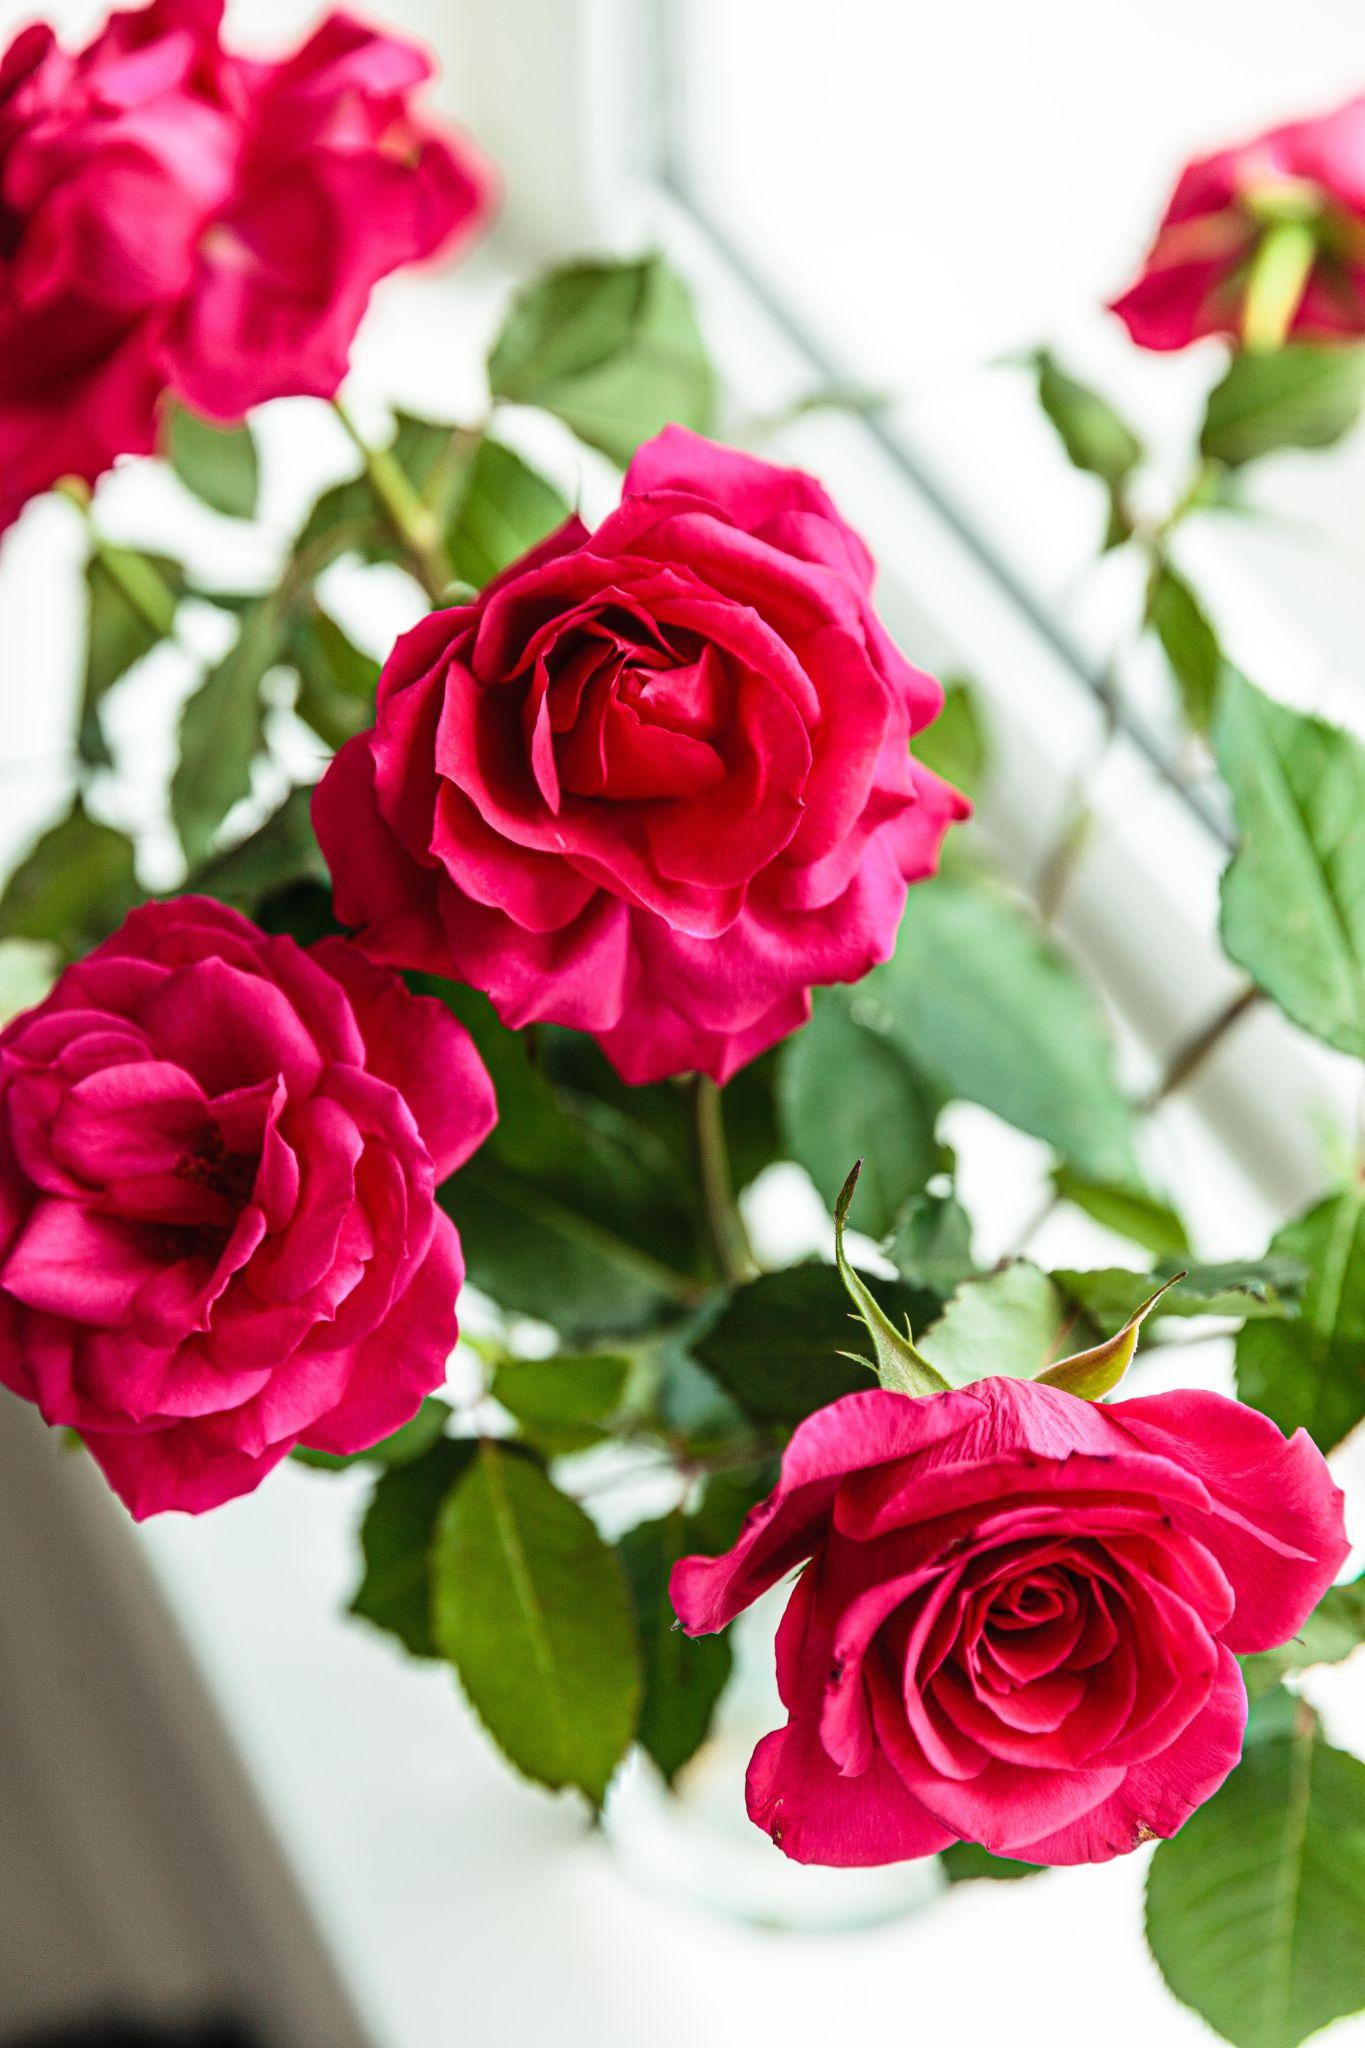 Hoa hồng đã lâu thành biểu tượng cho tình yêu và sự trân quý. Hình ảnh hoa hồng đỏ sẽ mang đến cho bạn cái nhìn toát lên tinh thần lãng mạn và thấm thoát ý nghĩa của các loại hoa khác nhau.